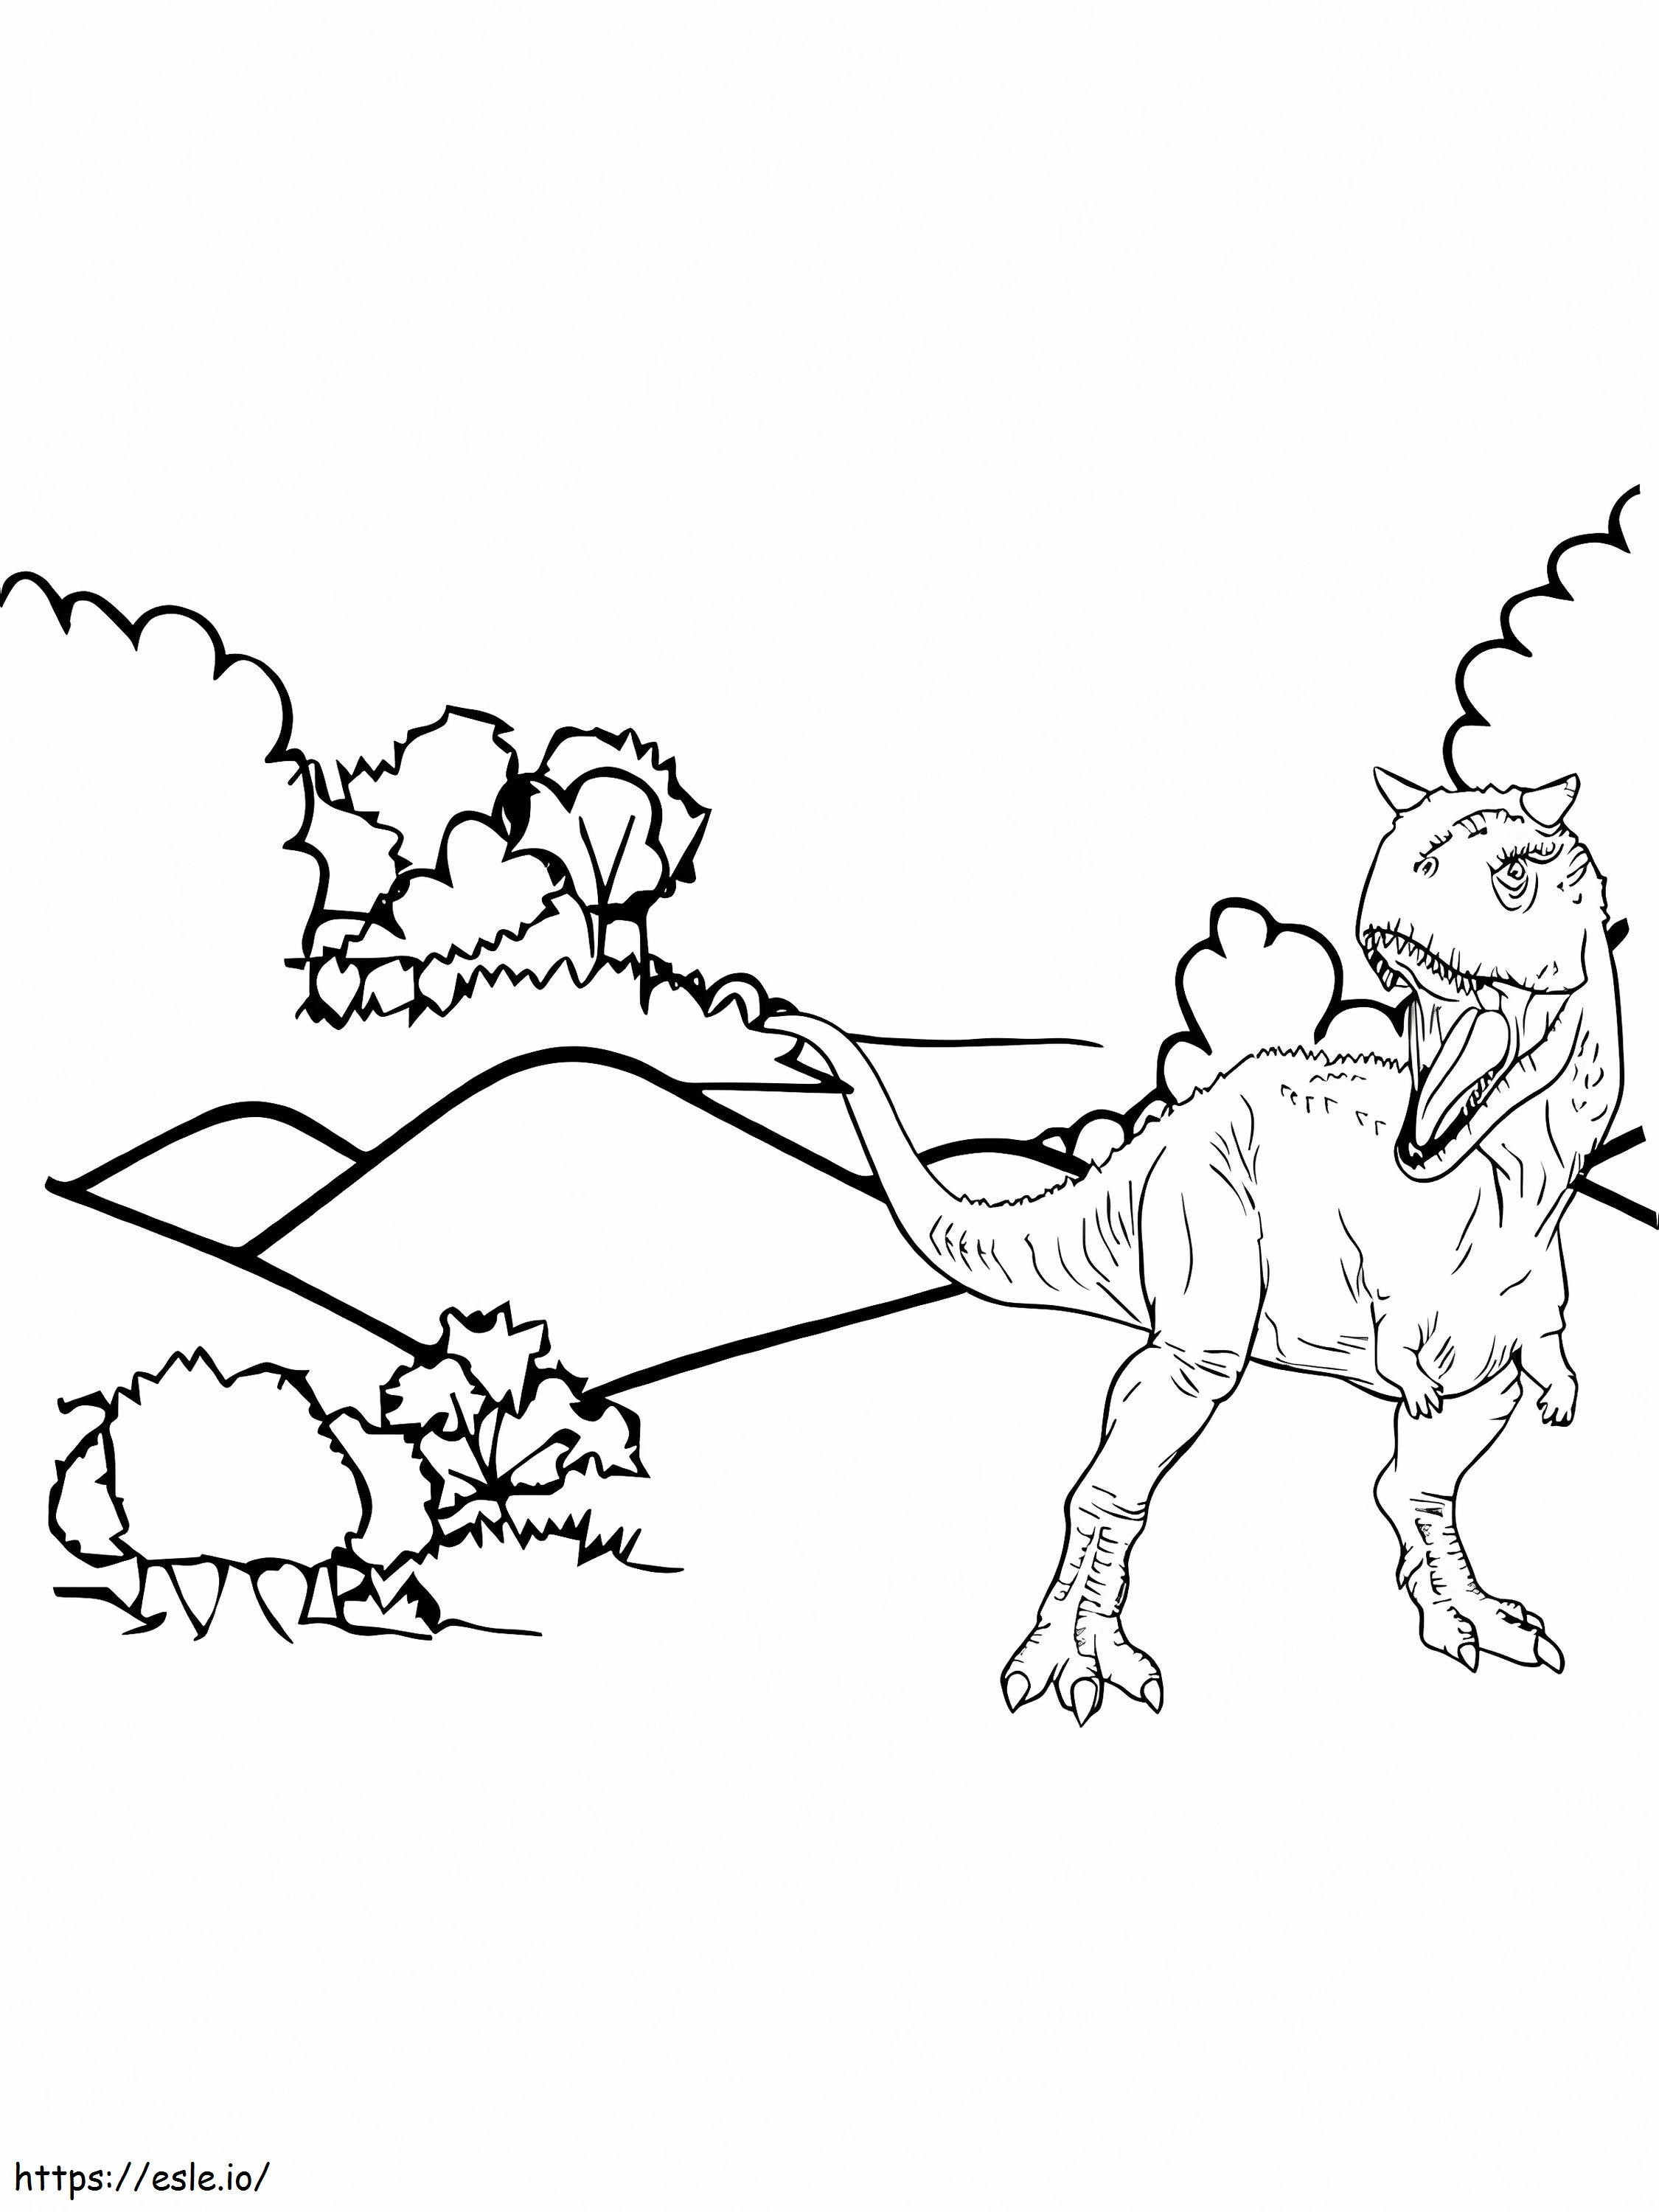 Carnotaurus ve Doğa boyama